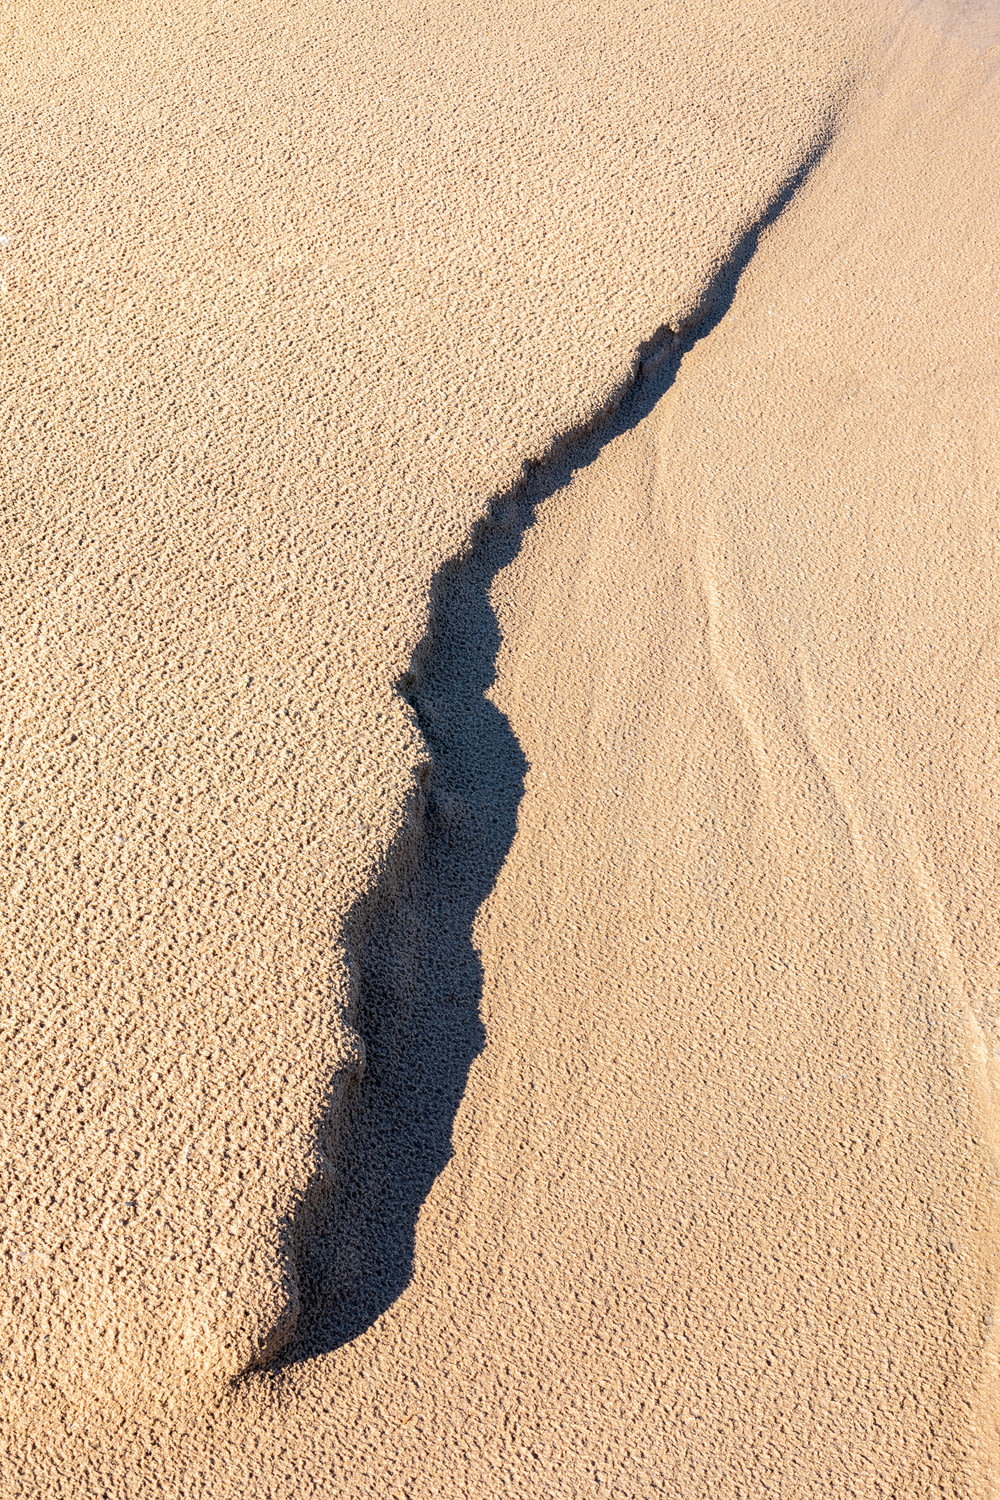 sombra da pessoa na areia marrom